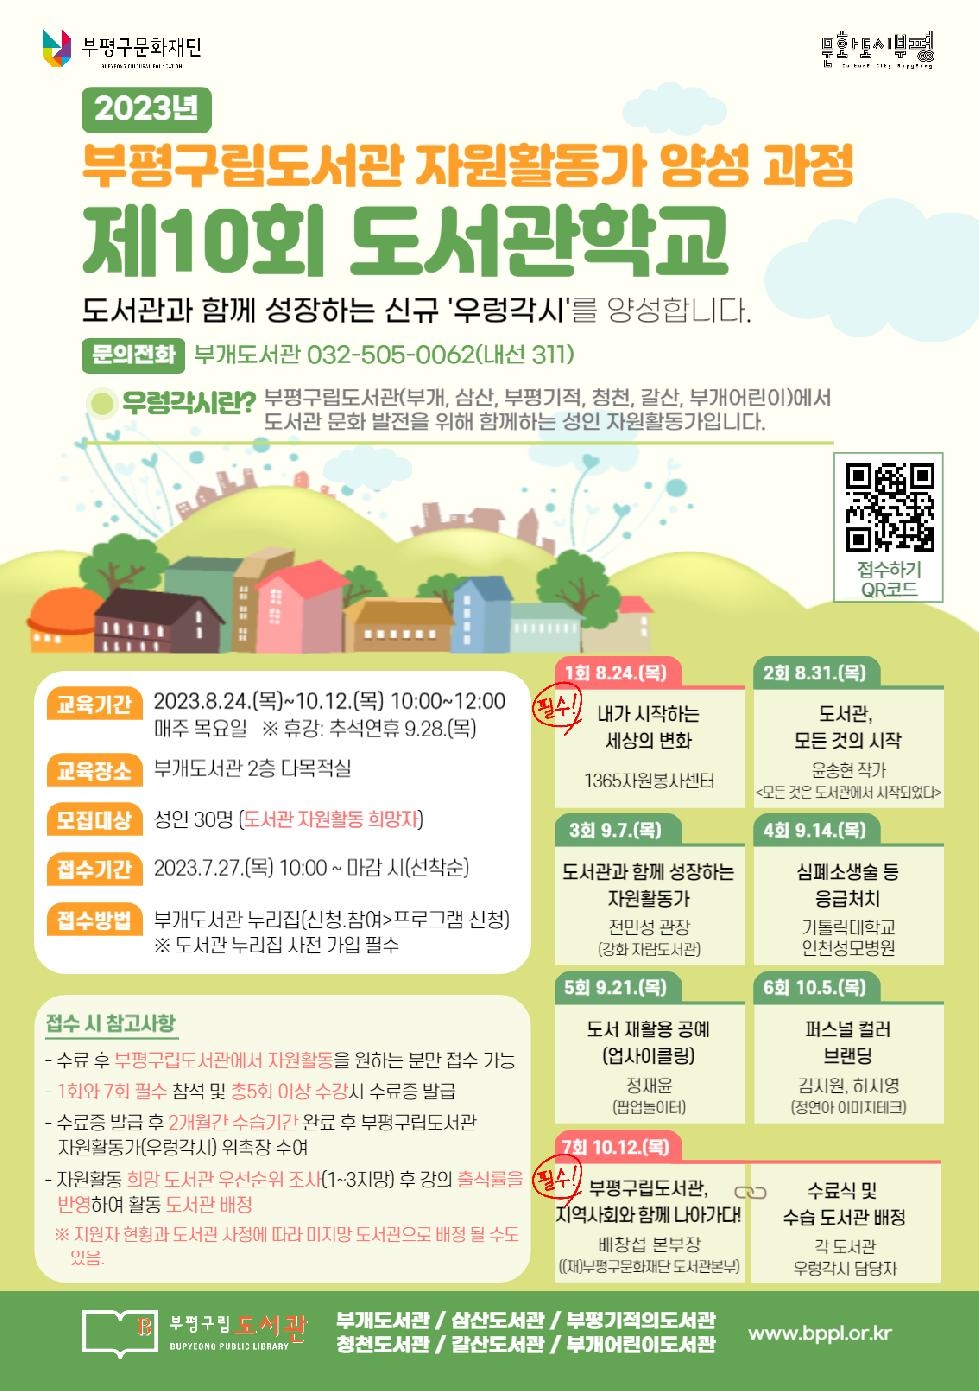 인천 부평구립도서관, 도서관 자원활동가 양성을 위한 ‘제10회 도서관학교’참가자 모집